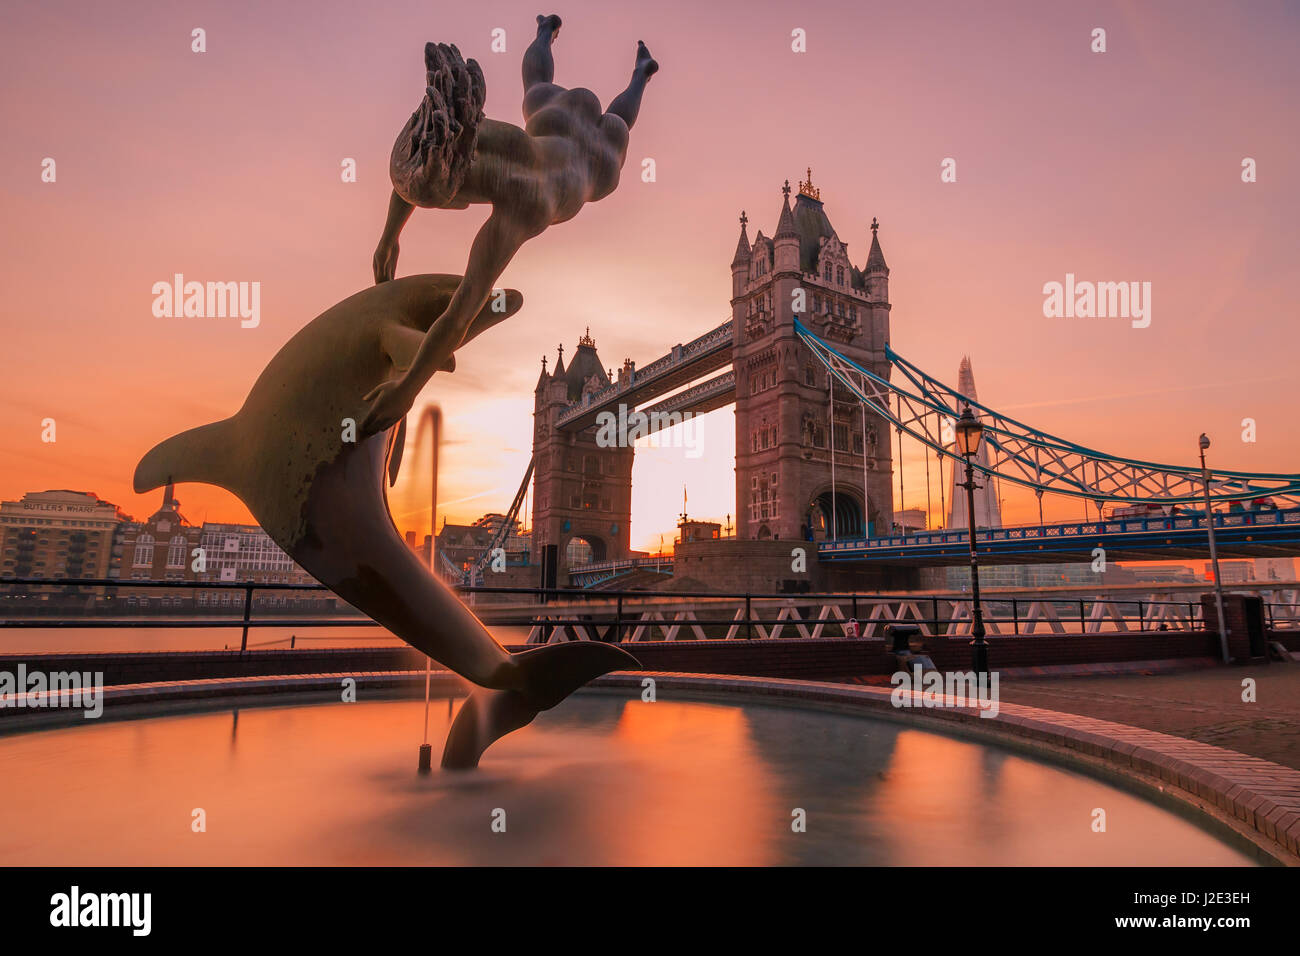 Photo de fille avec un dauphin (1973), une sculpture de la London Tower Bridge par David Wynne. Banque D'Images